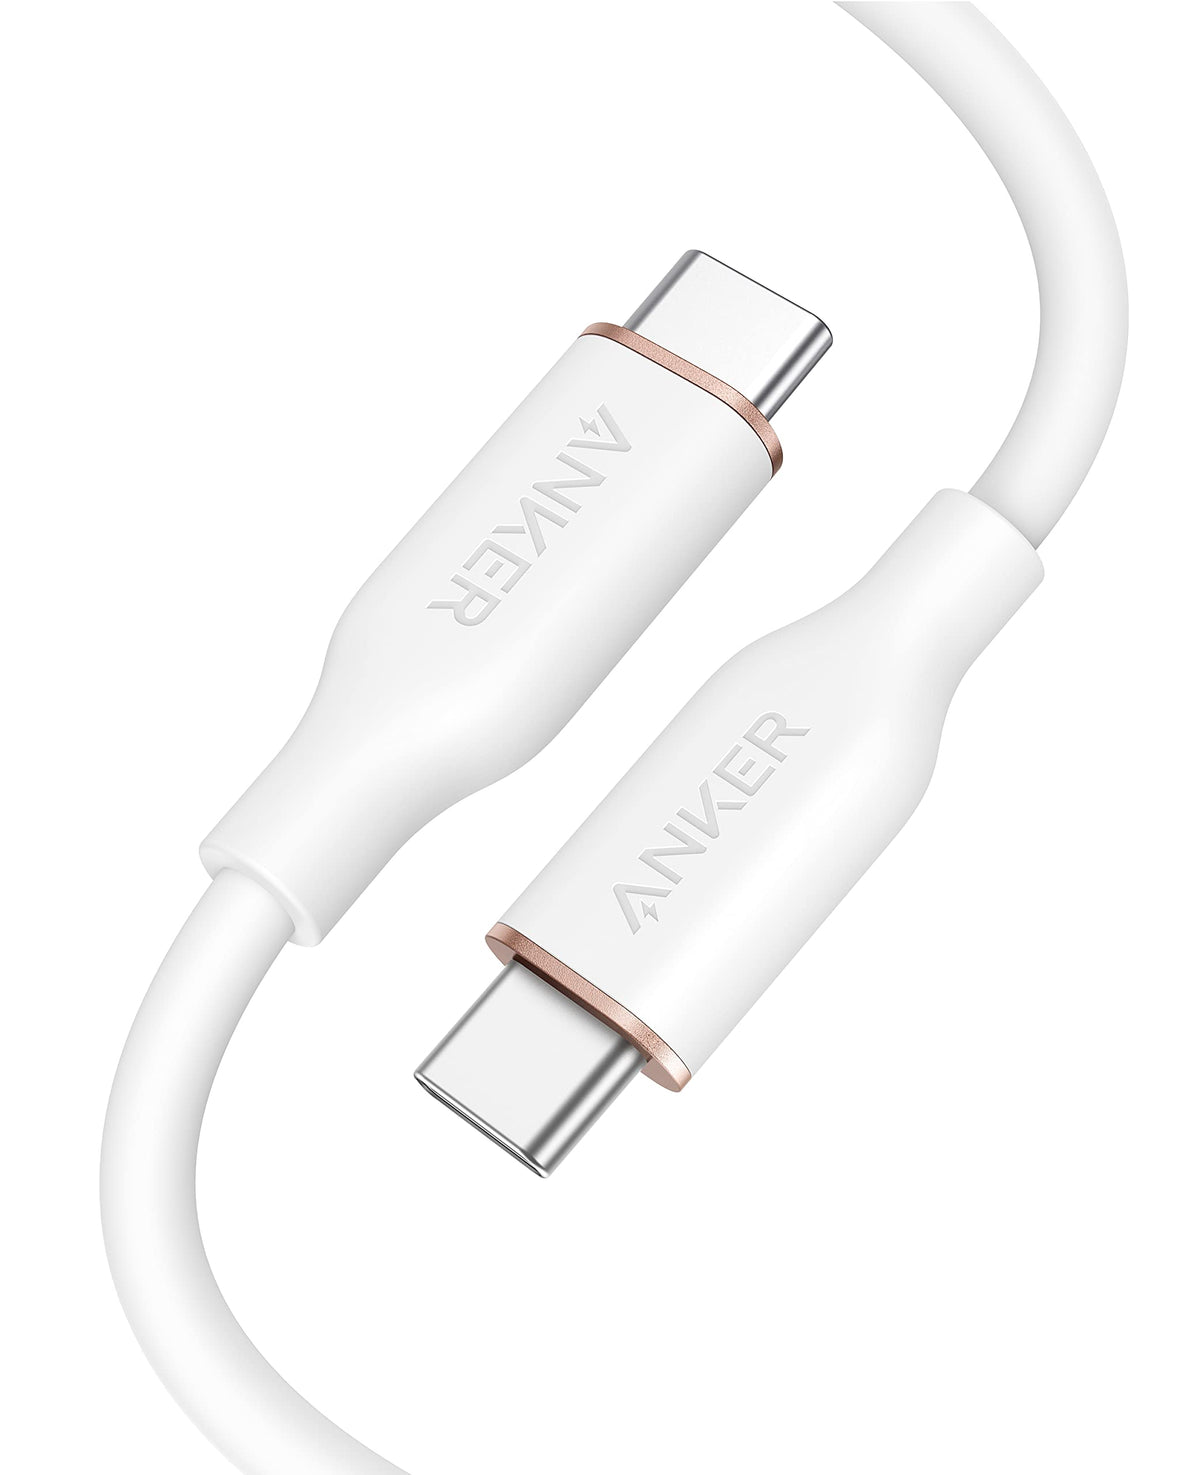 Anker &lt;b&gt;643&lt;/b&gt; USB-C to USB-C Cable (Flow, Silicone)